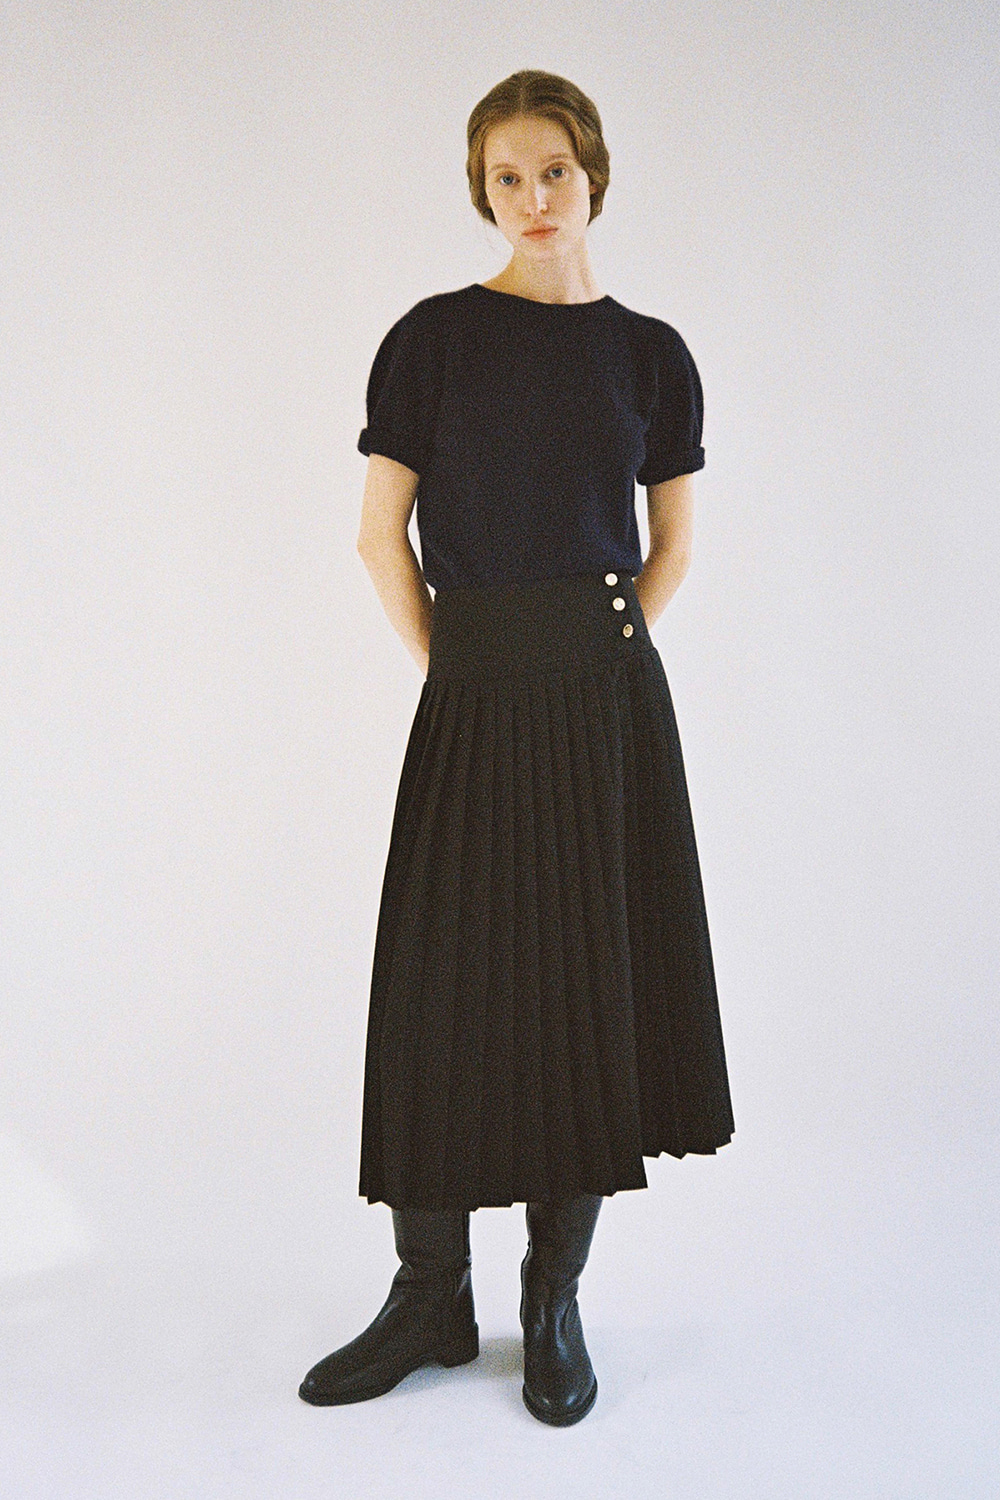 Franc Pleated Skirt (black)